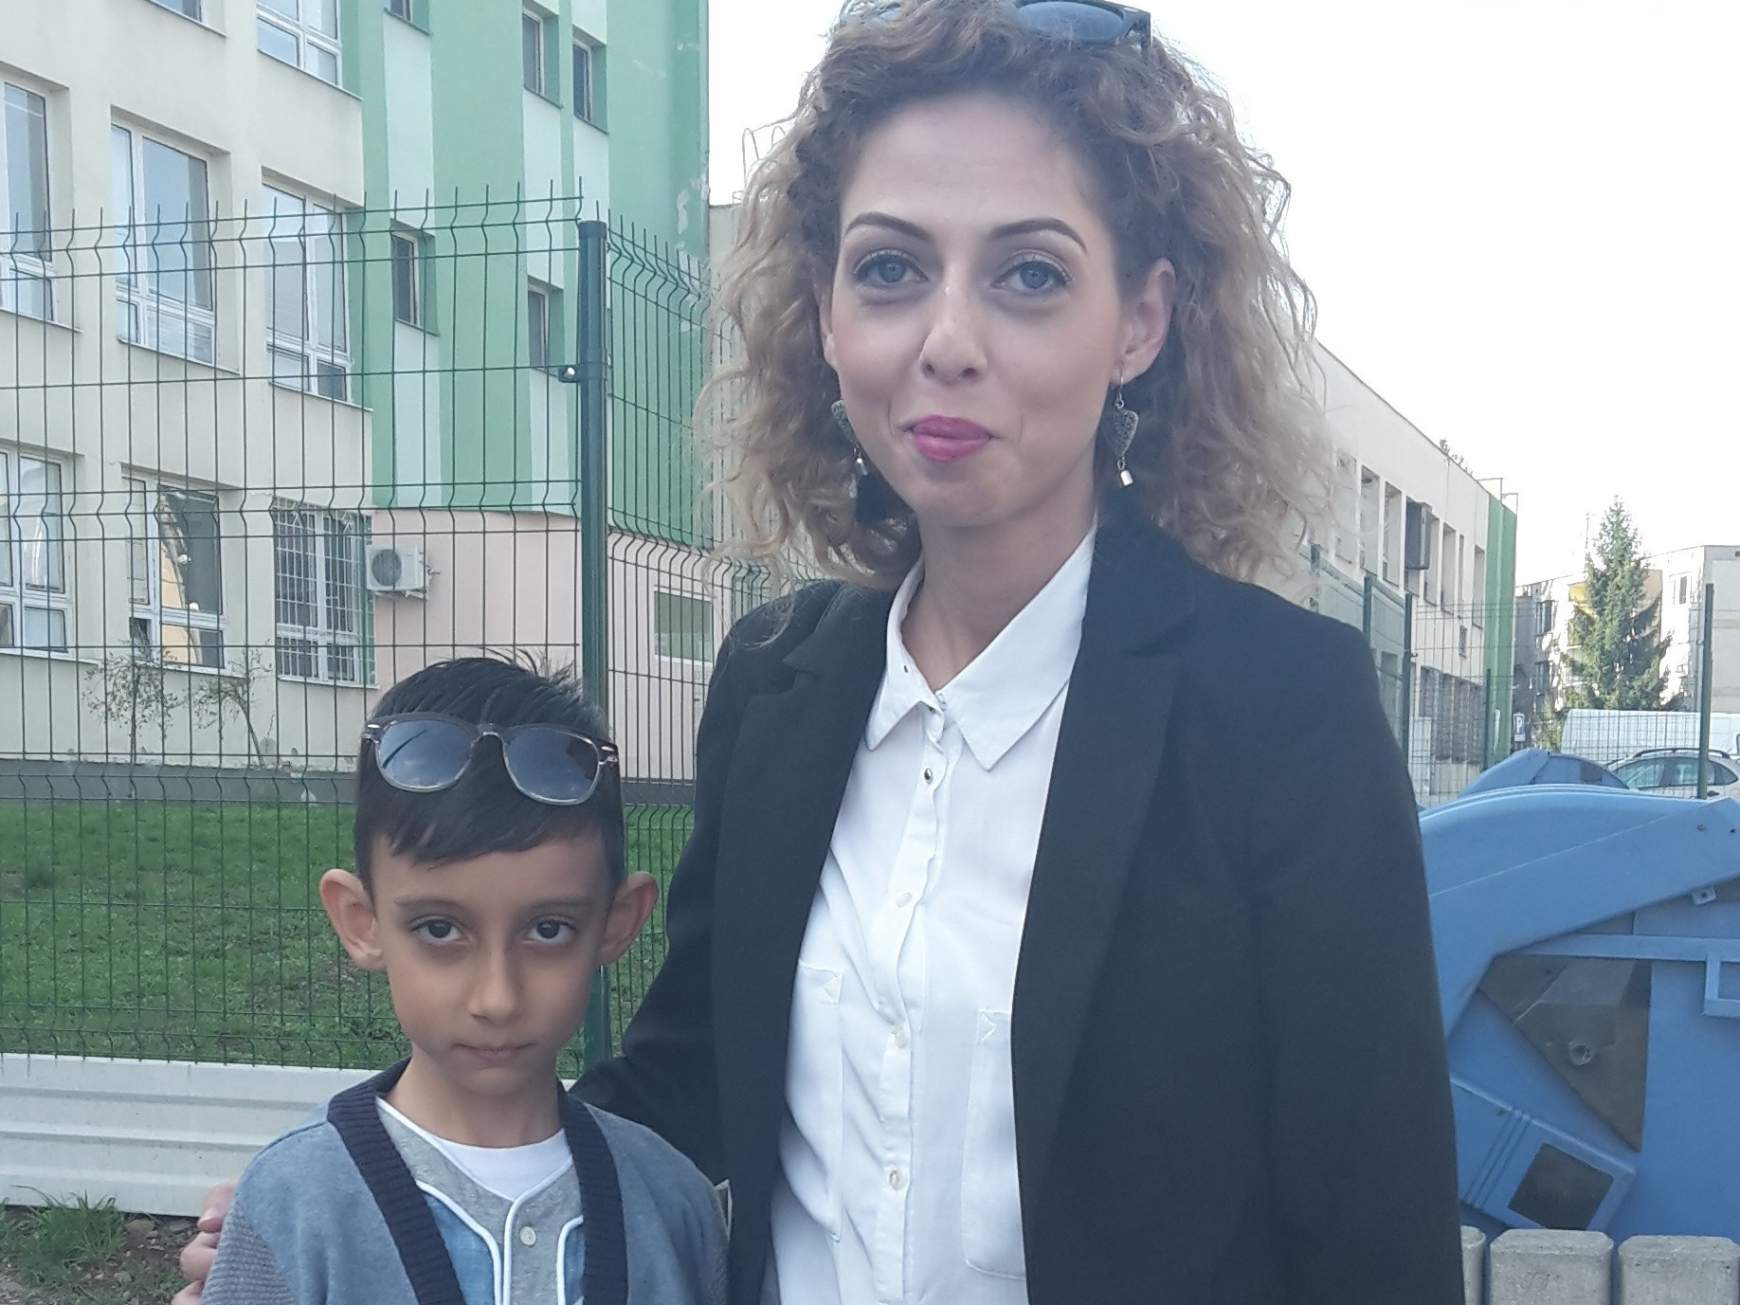 Balogh Nikolett kisfiát azért íratja magyar iskolába, mert maga is oda járt